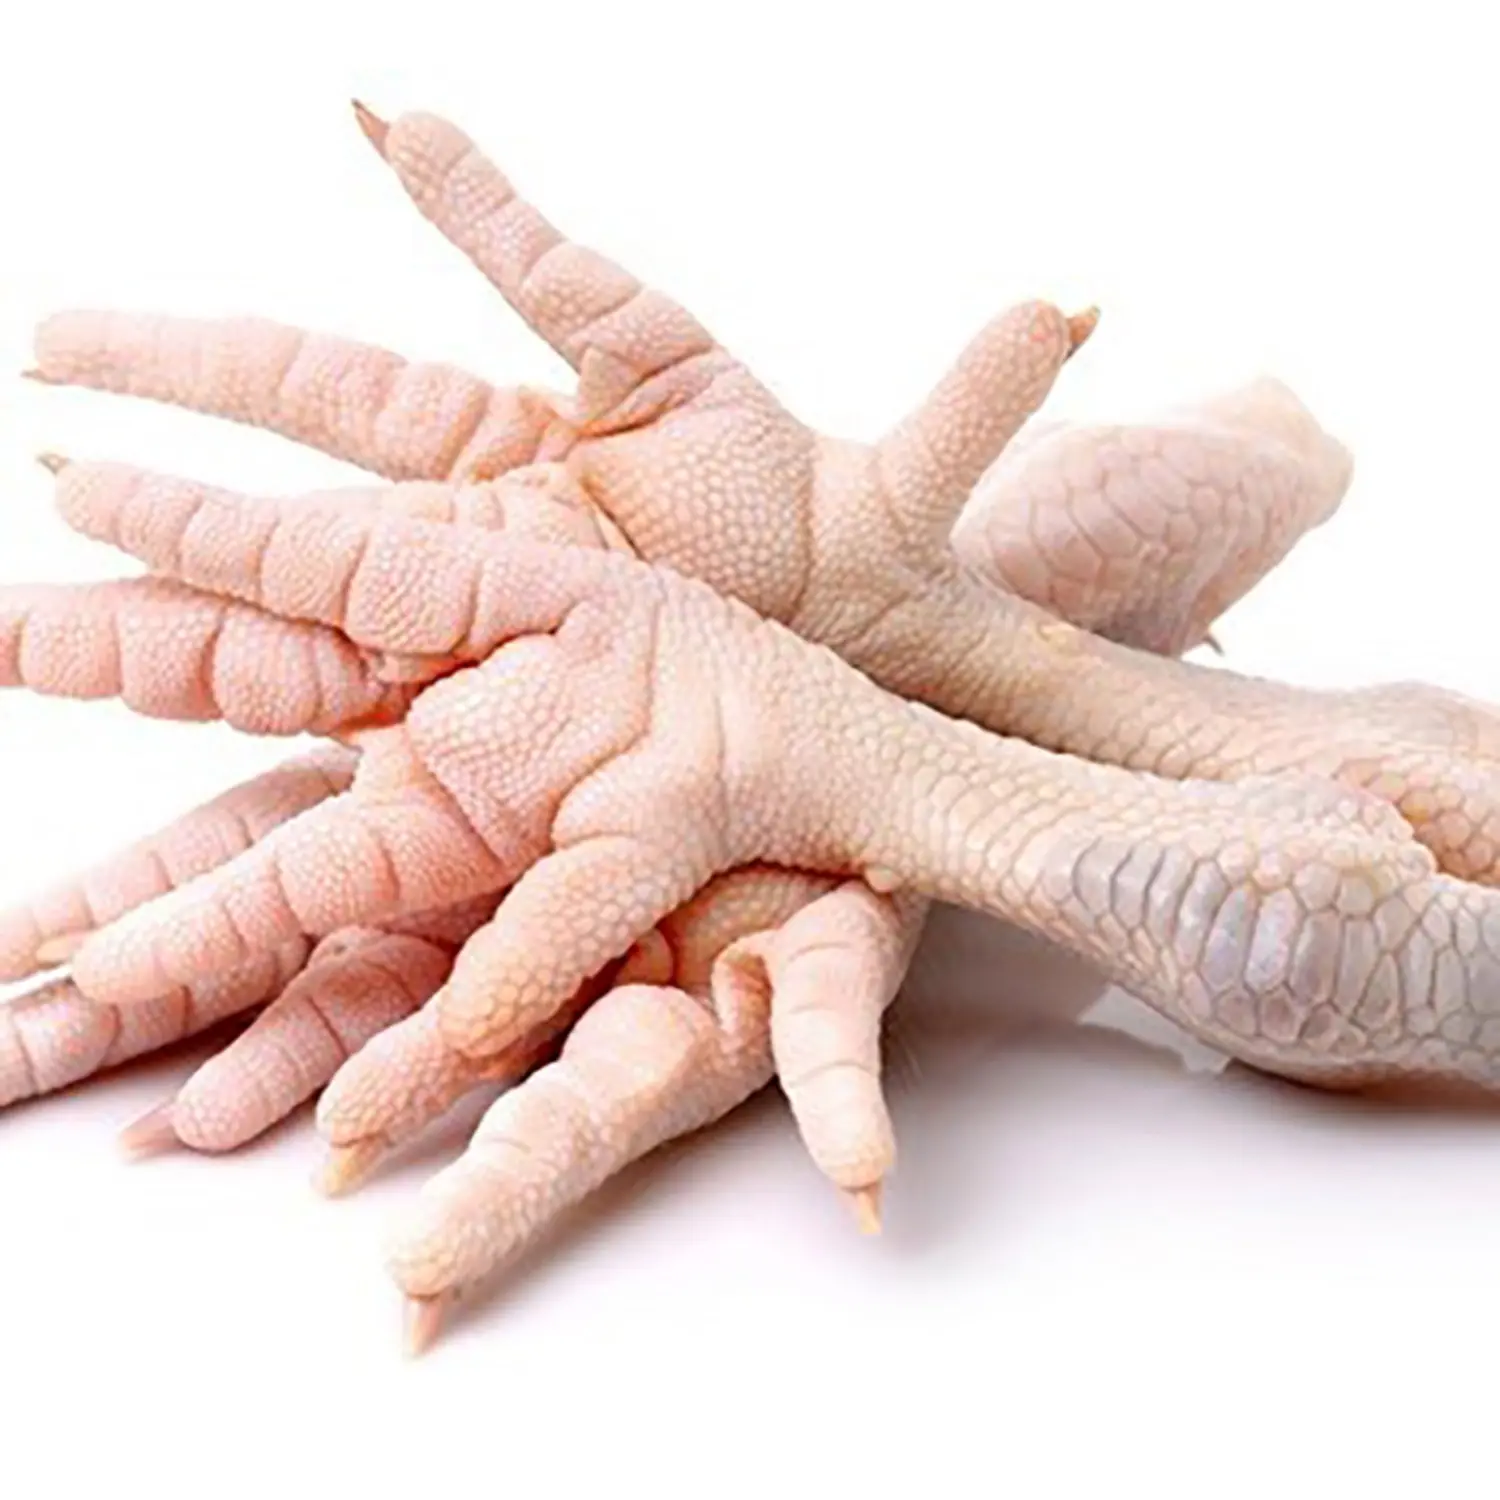 Frozen Chicken Feet / Frozen Chicken Feet and paws for sale / Organic chicken feet and paws Cheap Price